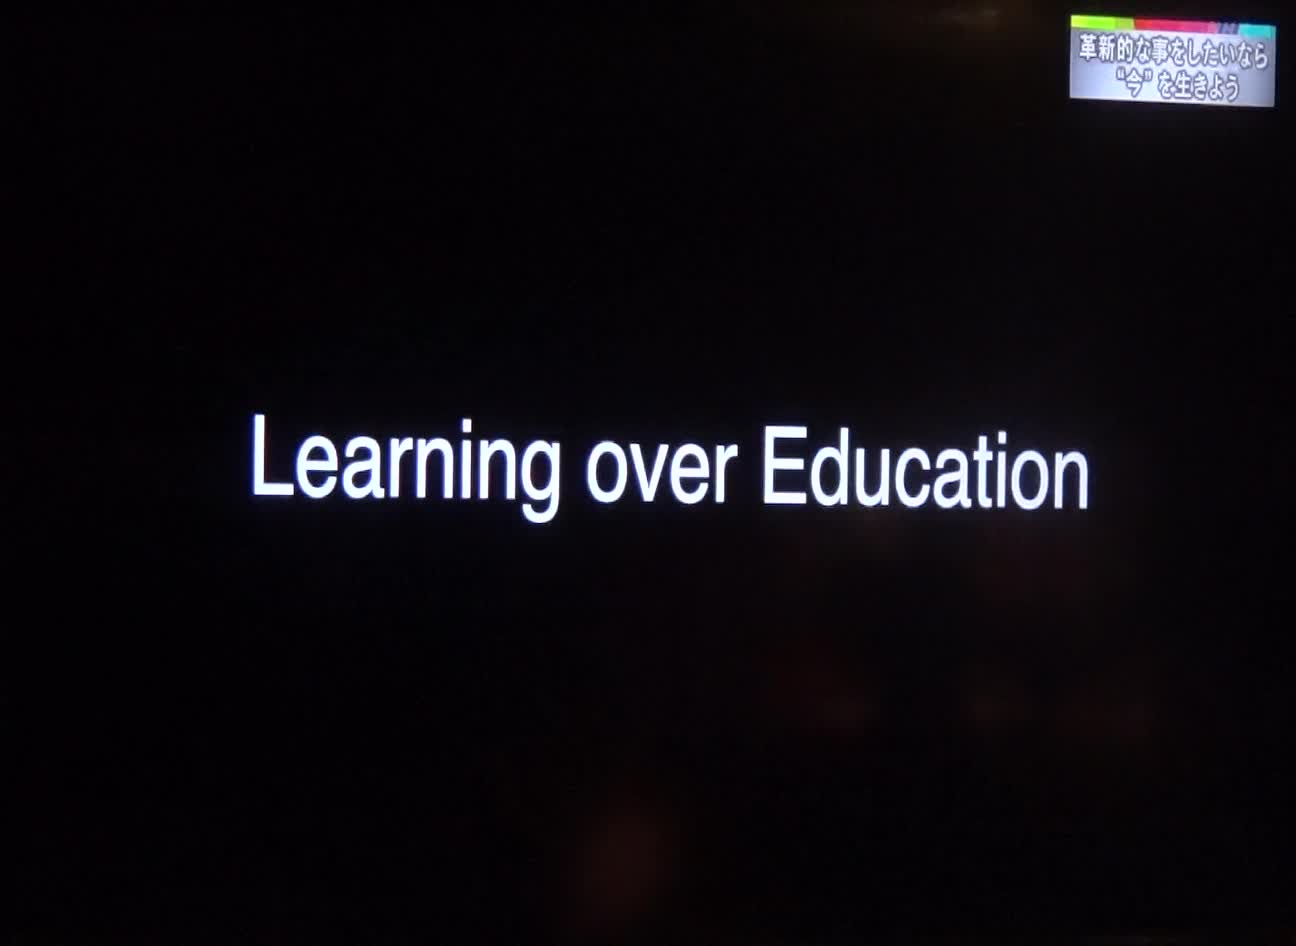 「誰かに教わるのが教育 自分から求めるのが学びです」 スーパープレゼンテーション 2015 02 25